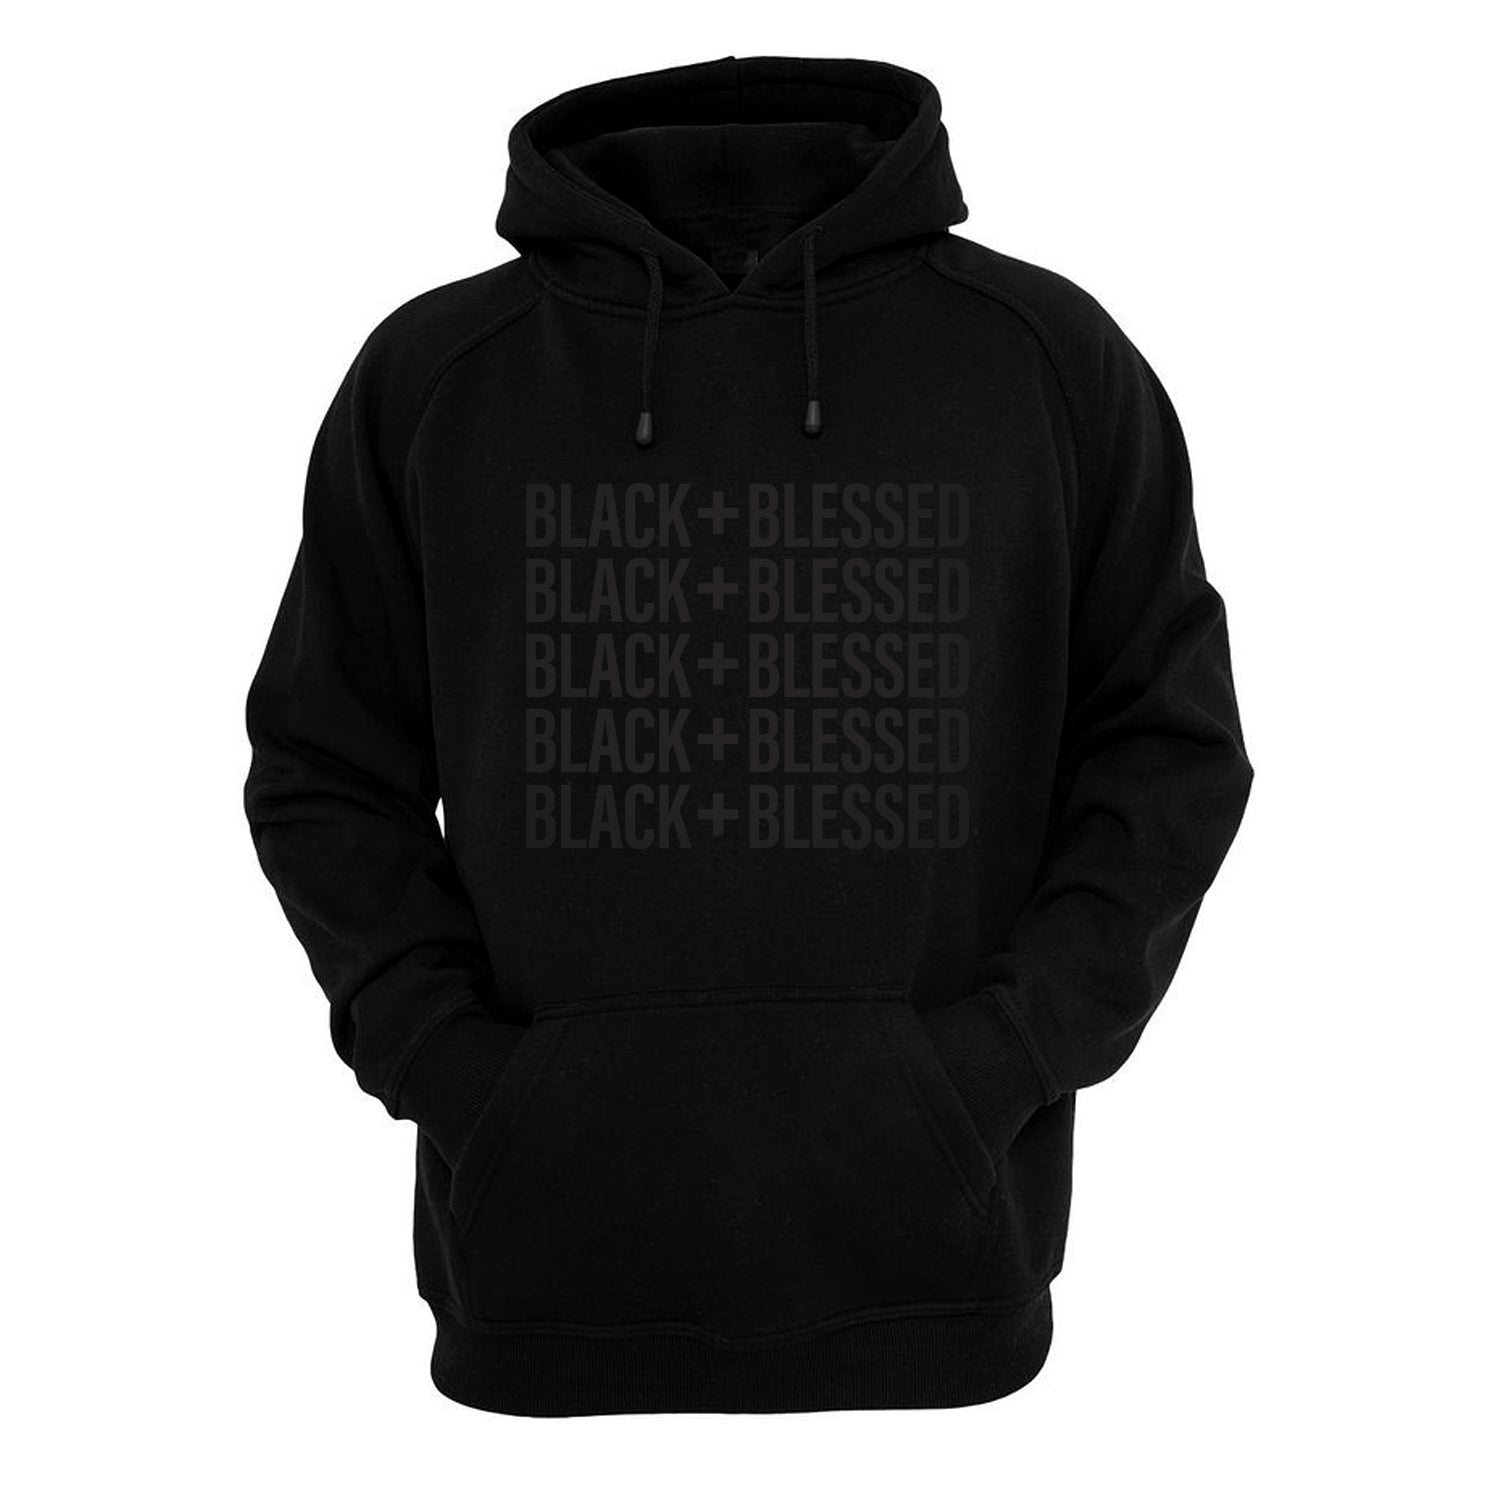 BLACK + BLESSED